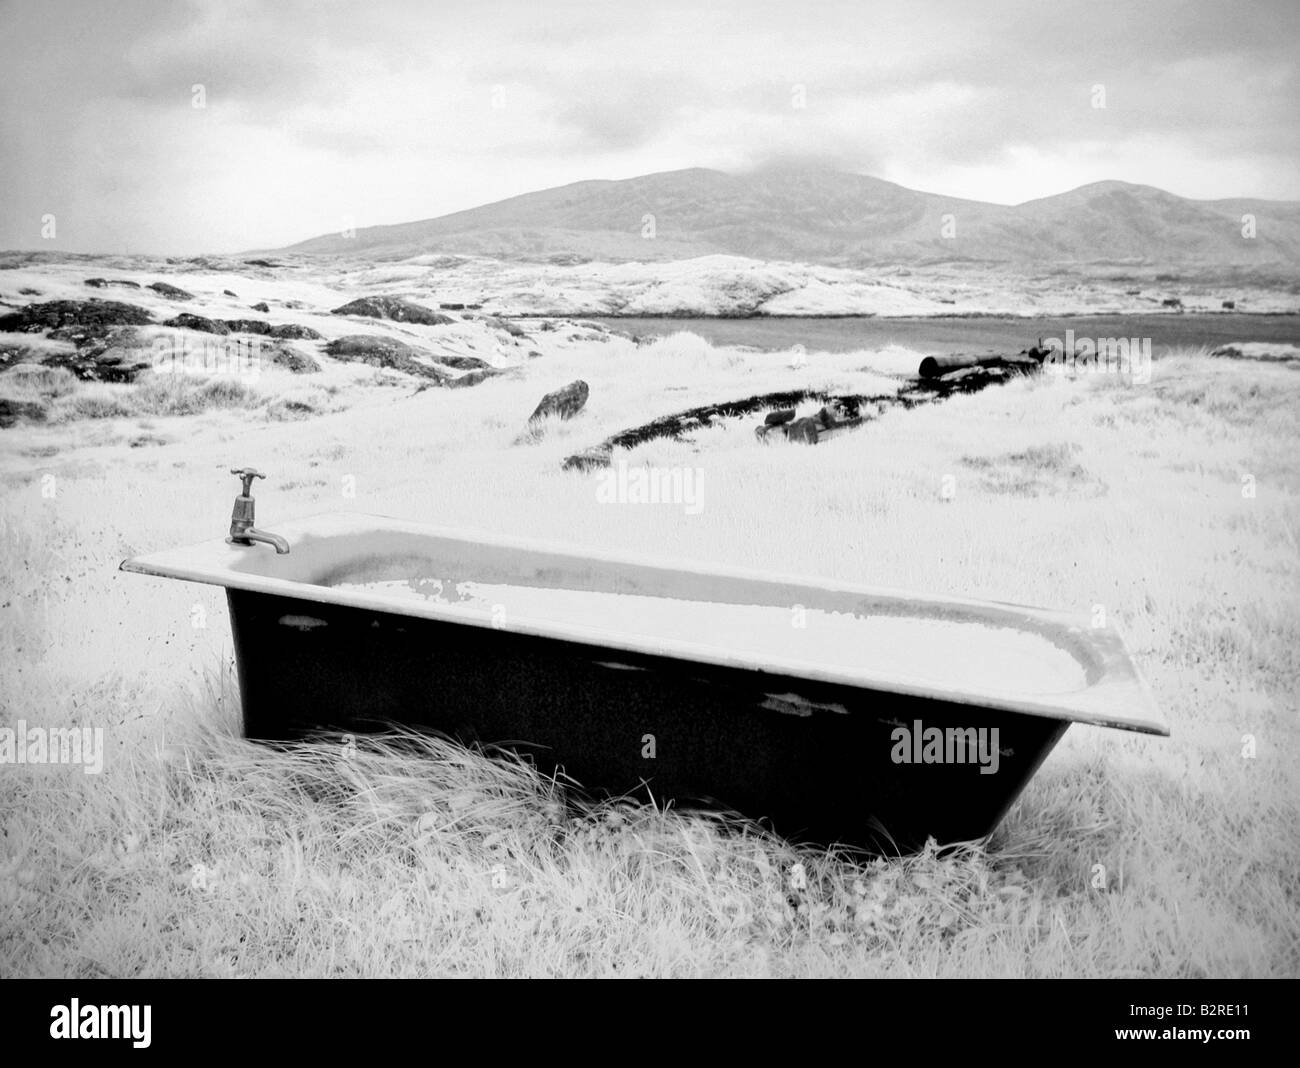 Infrared image of the old bathtub Isle of Harris Hebrides Scotland UK Stock Photo